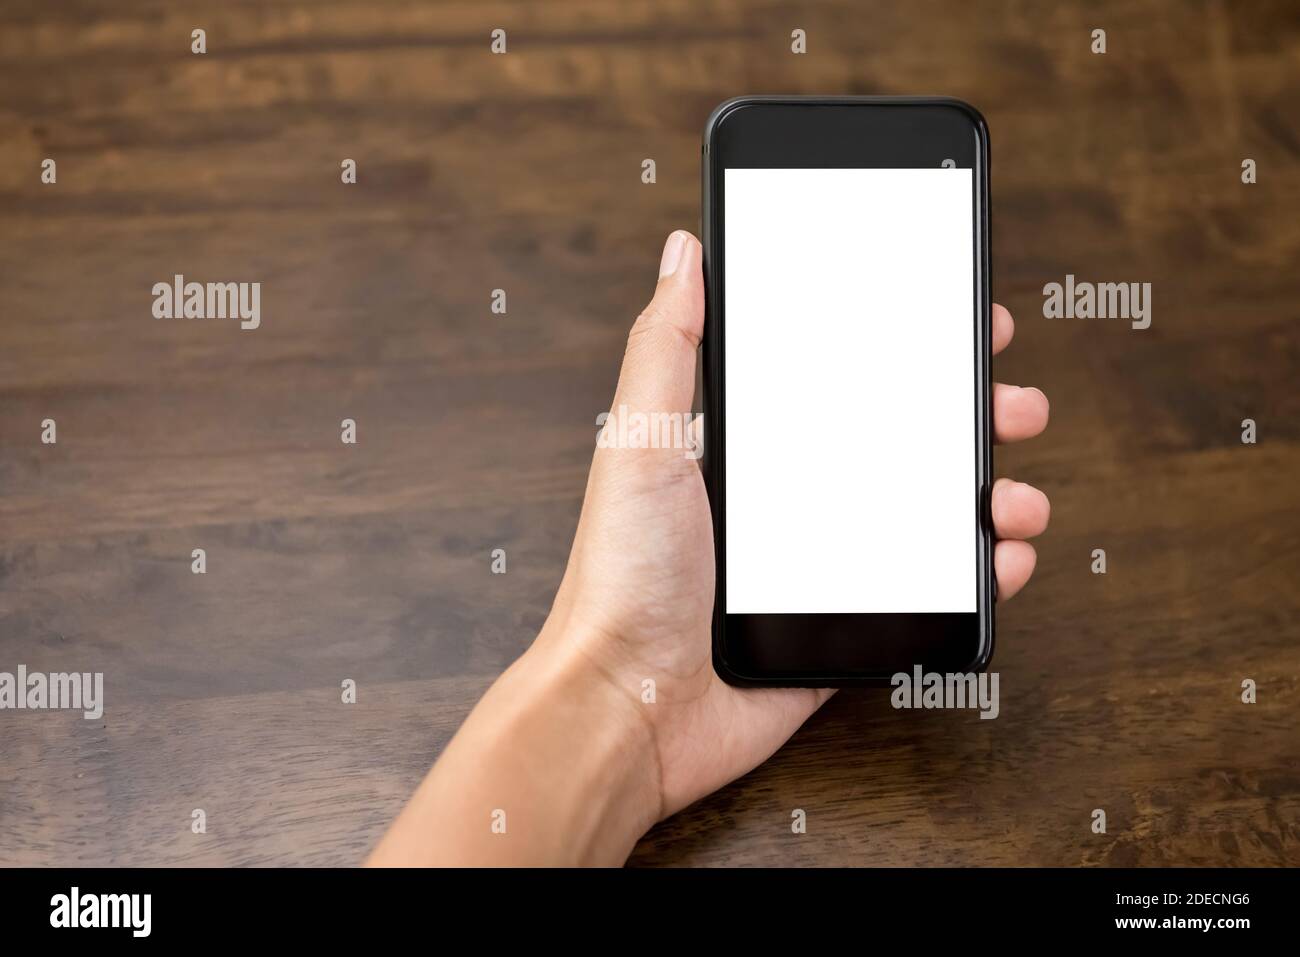 Donna mano che presenta smartphone con schermo bianco vuoto per montaggio i vostri testi o immagini Foto Stock